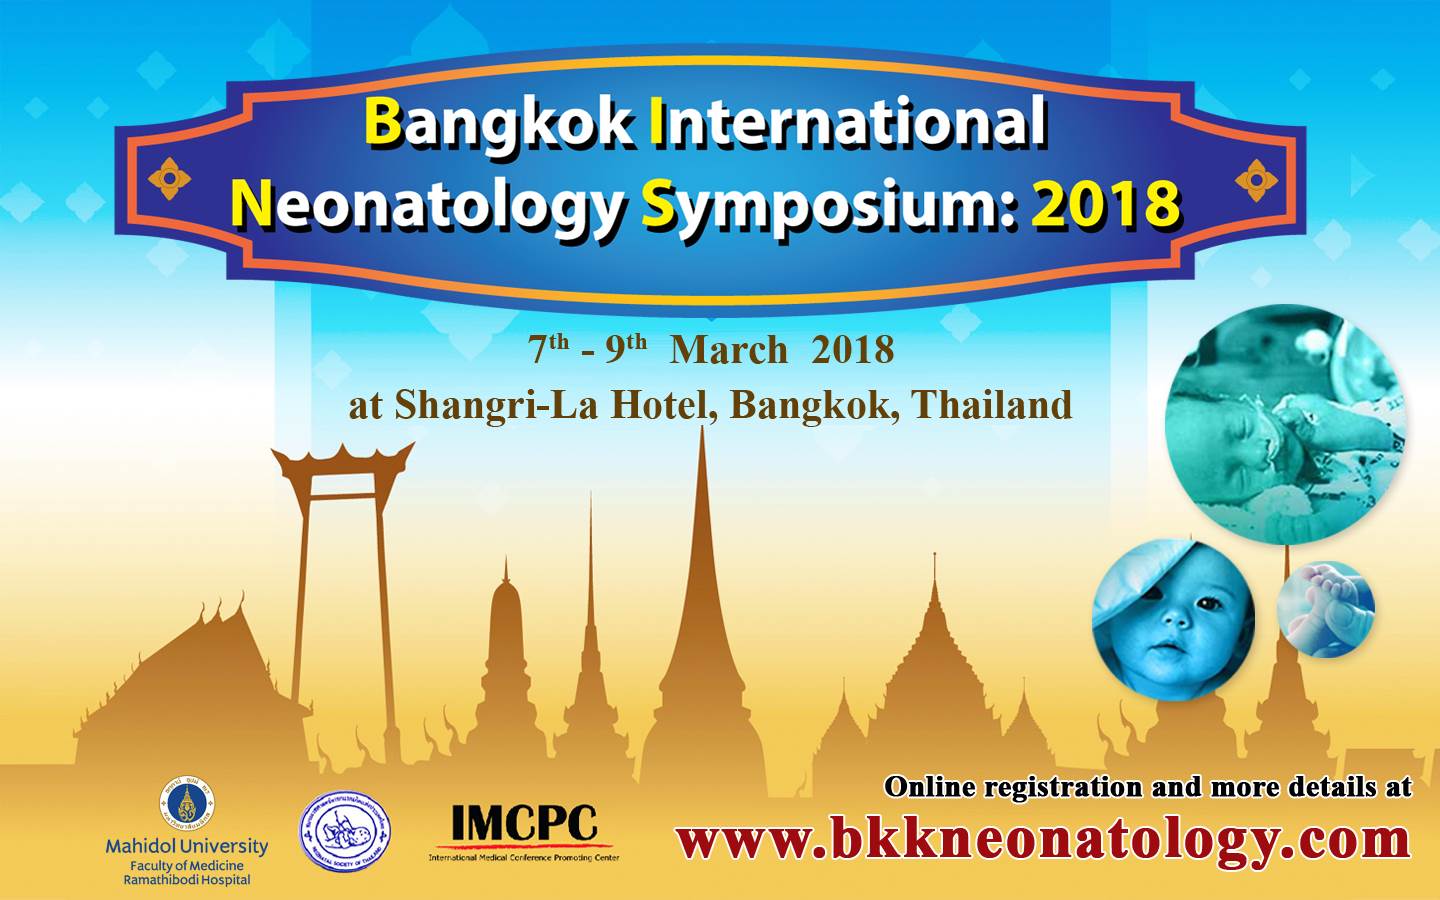 Bangkok International Neonatology Symposium 2018